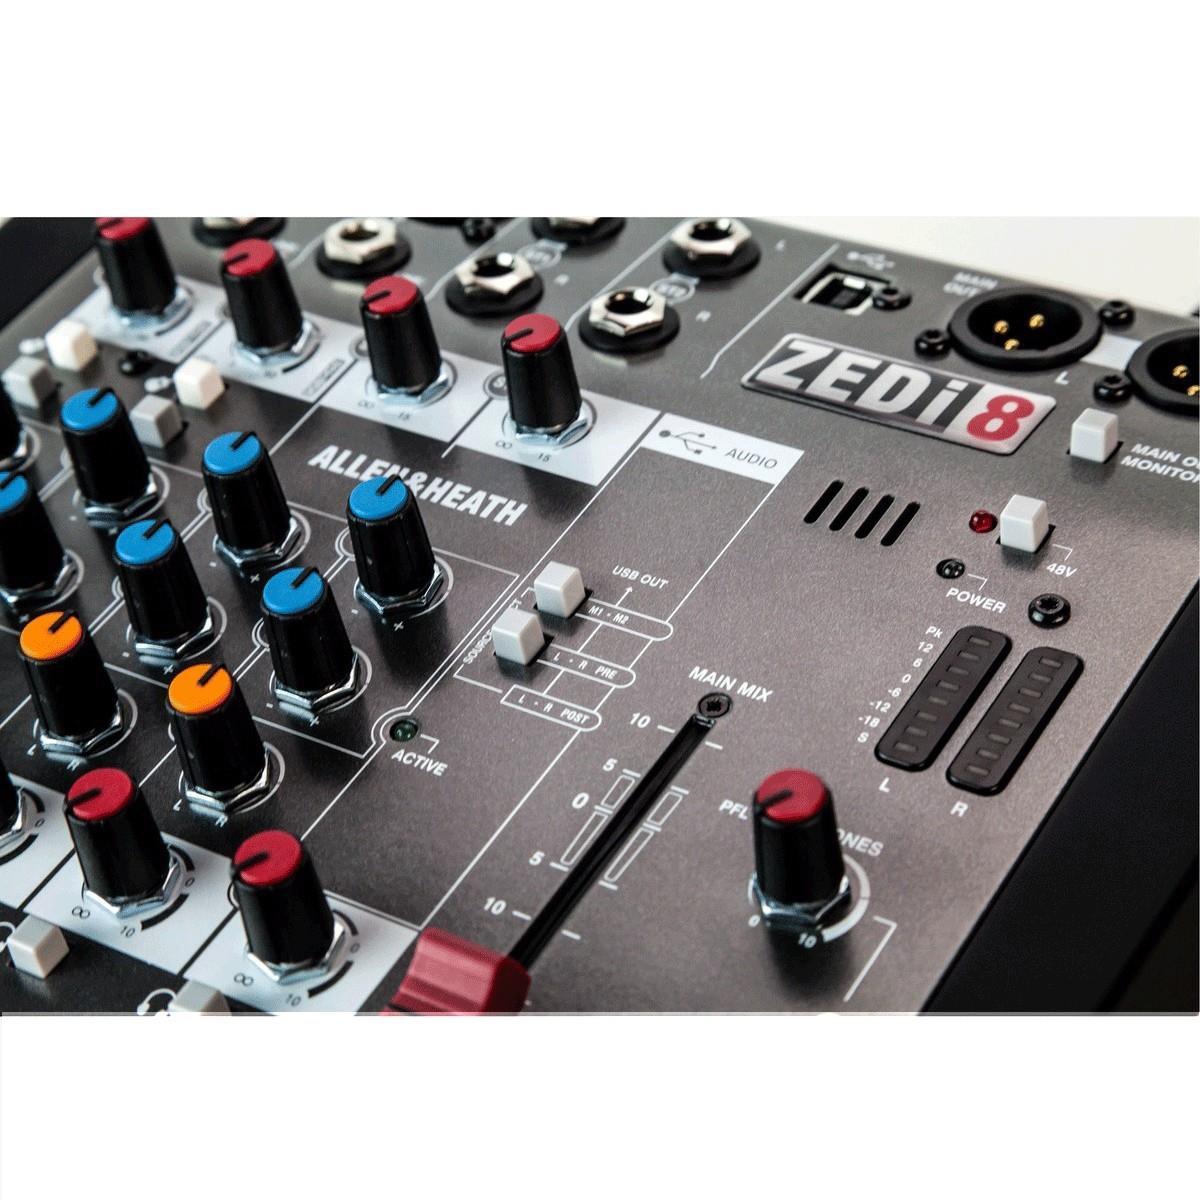 Allen & Heath ZEDi8 ZEDi-8 Compact Mixer - DY Pro Audio